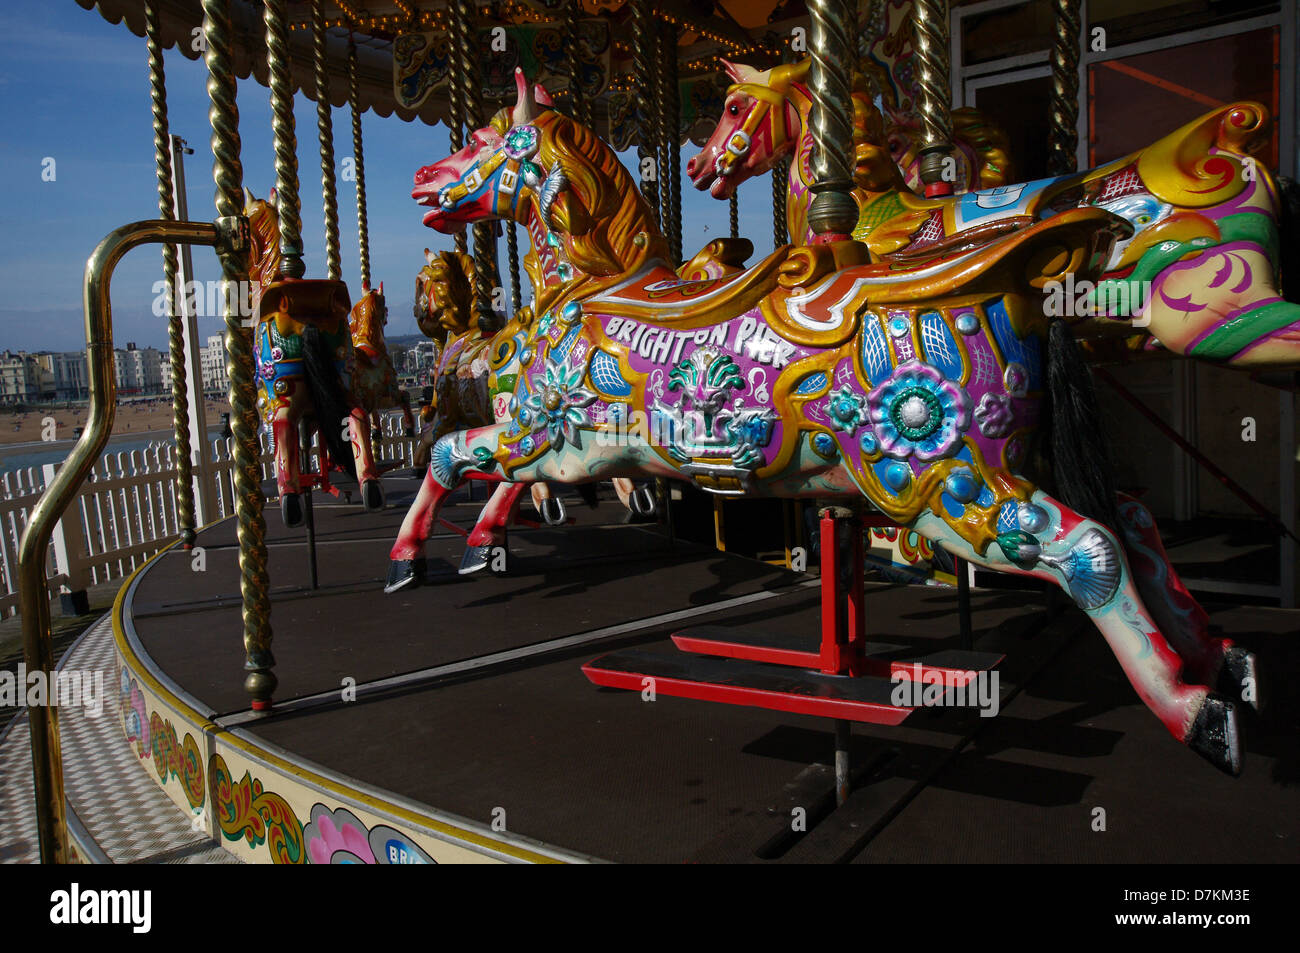 Carousel at the Brighton Pier - Brighton, England Stock Photo